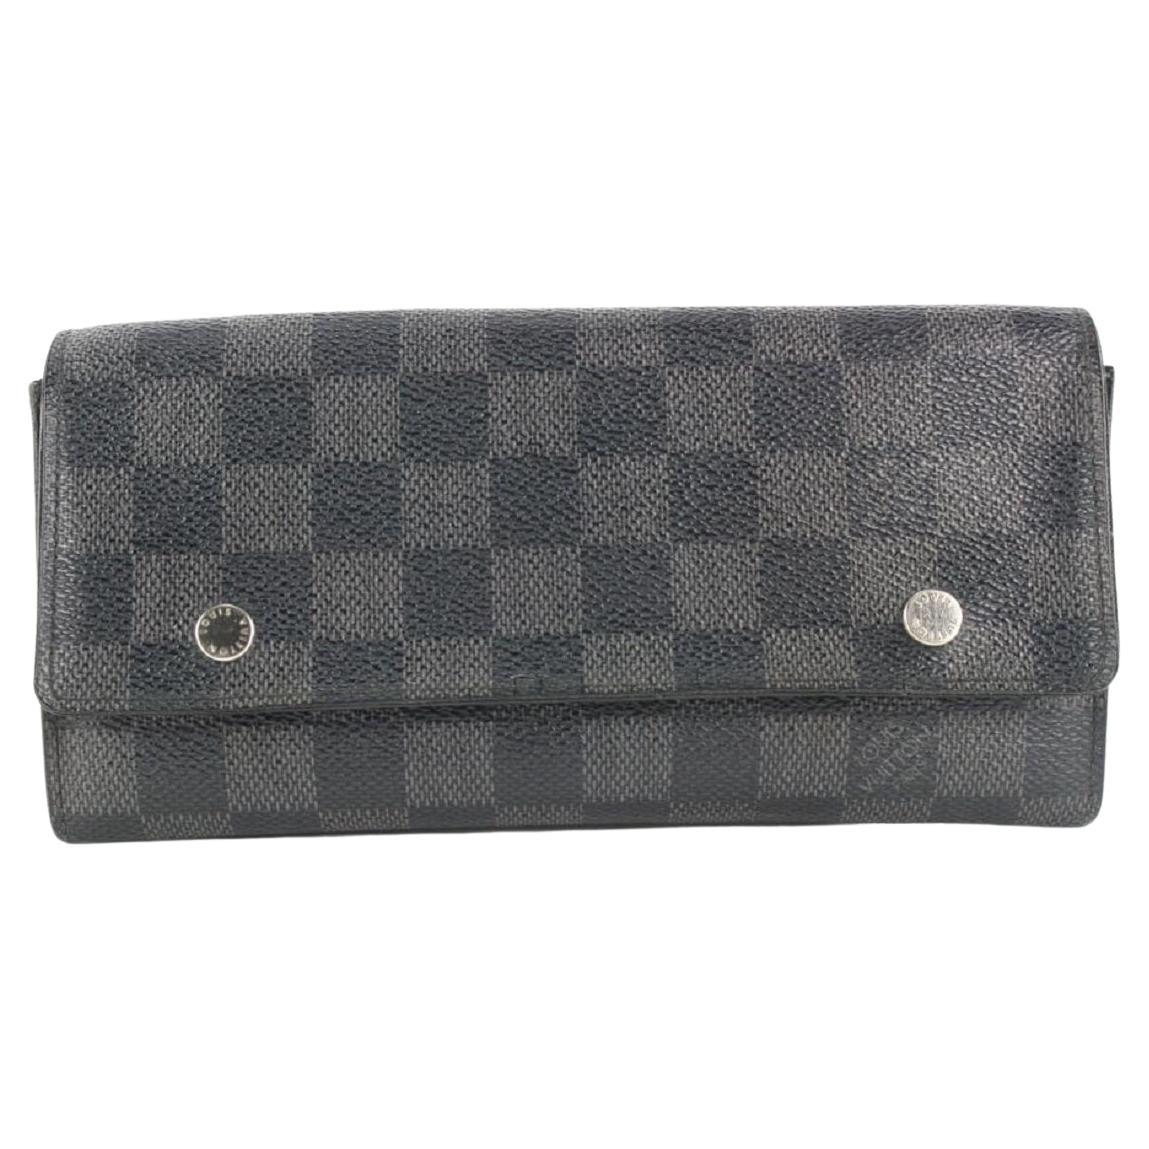 Modulbare, kompakte Damier Graphit-Brieftasche von Louis Vuitton 850 Einlegeböden48